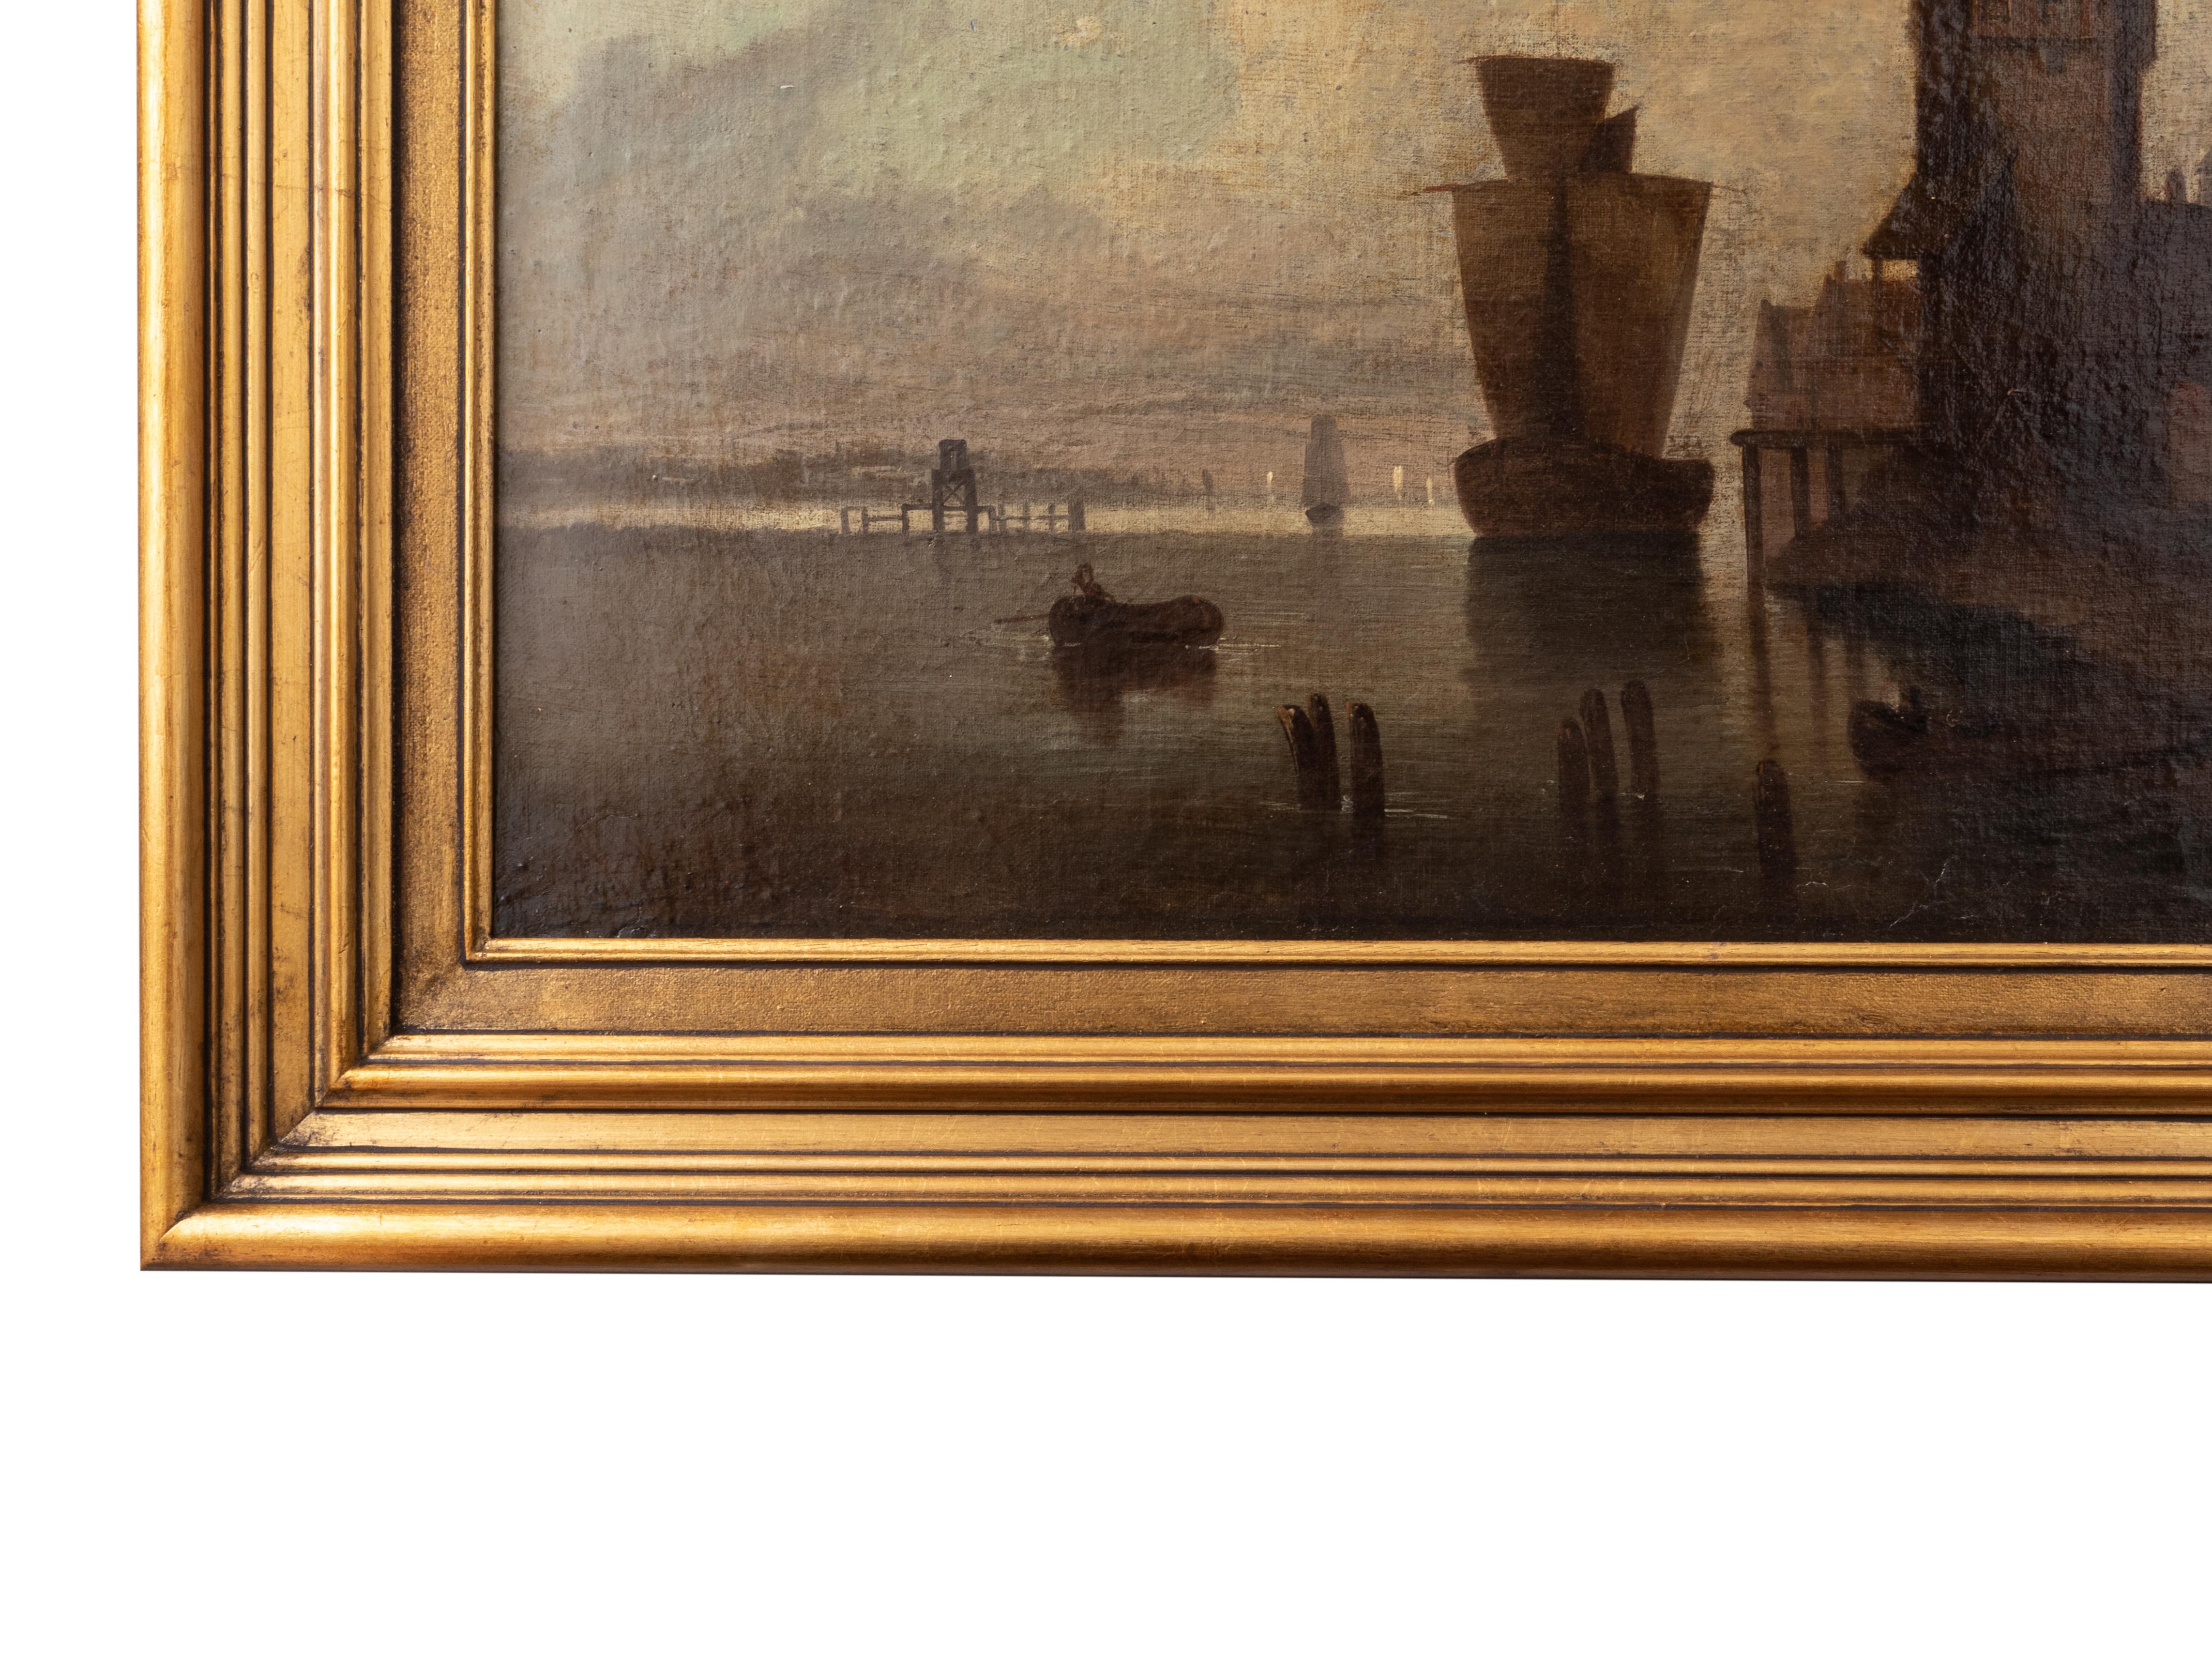 Peinture de paysage d'un port hollandais à l'aube avec une voile de caravelle et un bateau à l'arrière-plan avec des bâtiments flamands, en technique sfumato, datée '1879' et signée 'Roudil'.
Cadre 86,5 x 60 cm 
toile 68 x 42,5 cm

